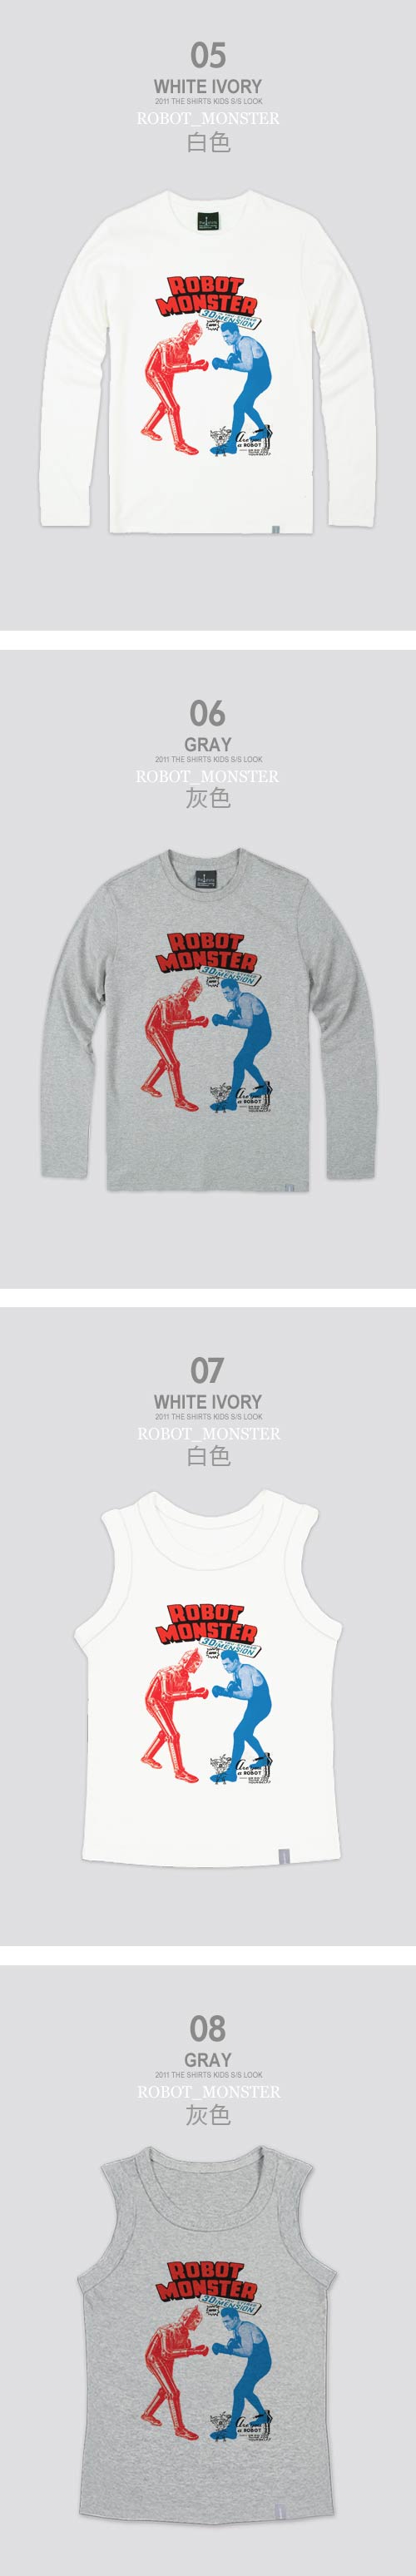 【The Shirts】機器人怪獸拳擊短袖T恤 (白色)